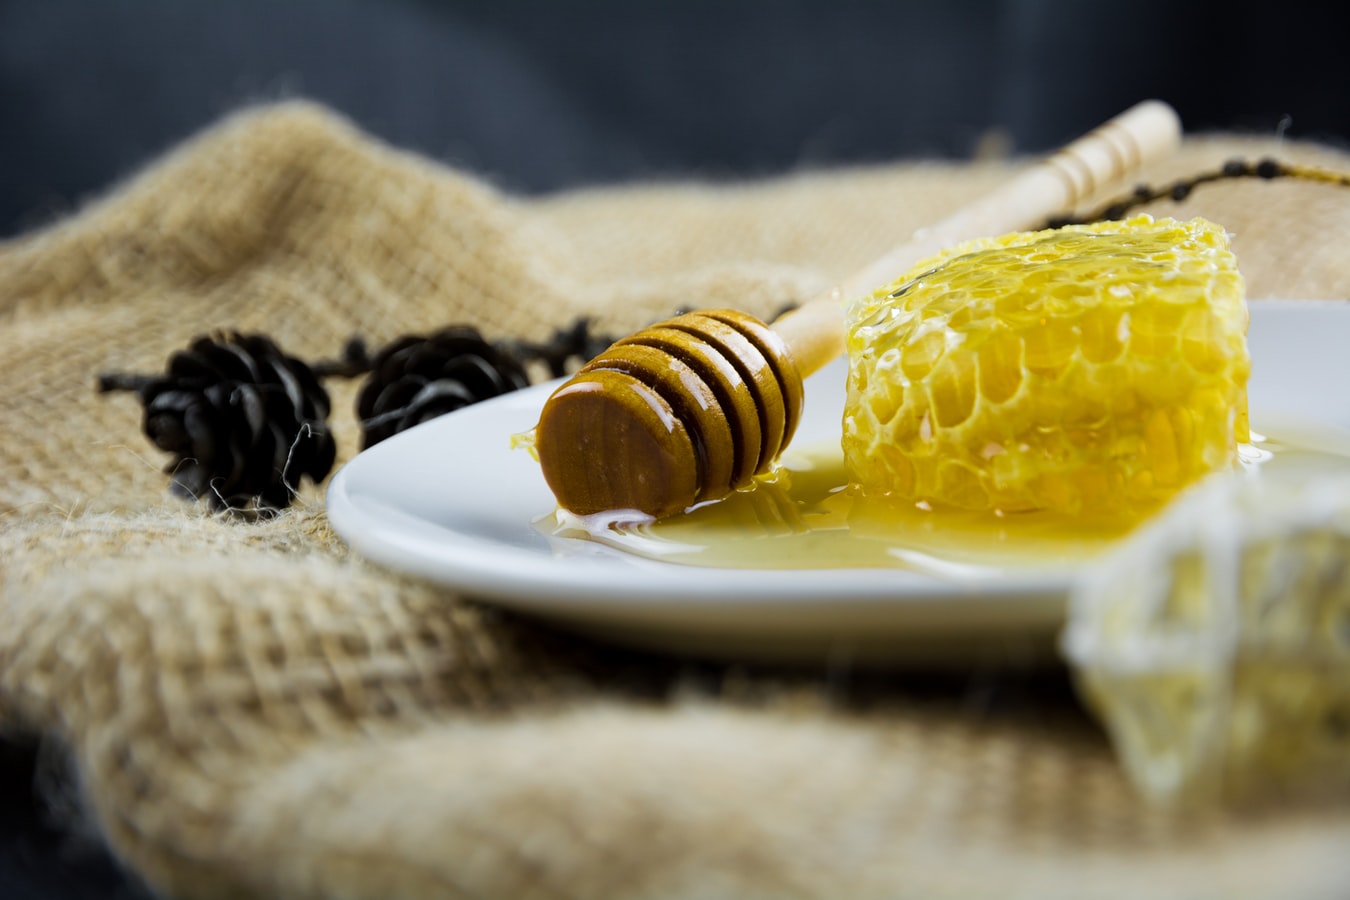 Honig wird gerne als Zuckeralternative beworben. Doch im Körper verhält er sich wie Zucker